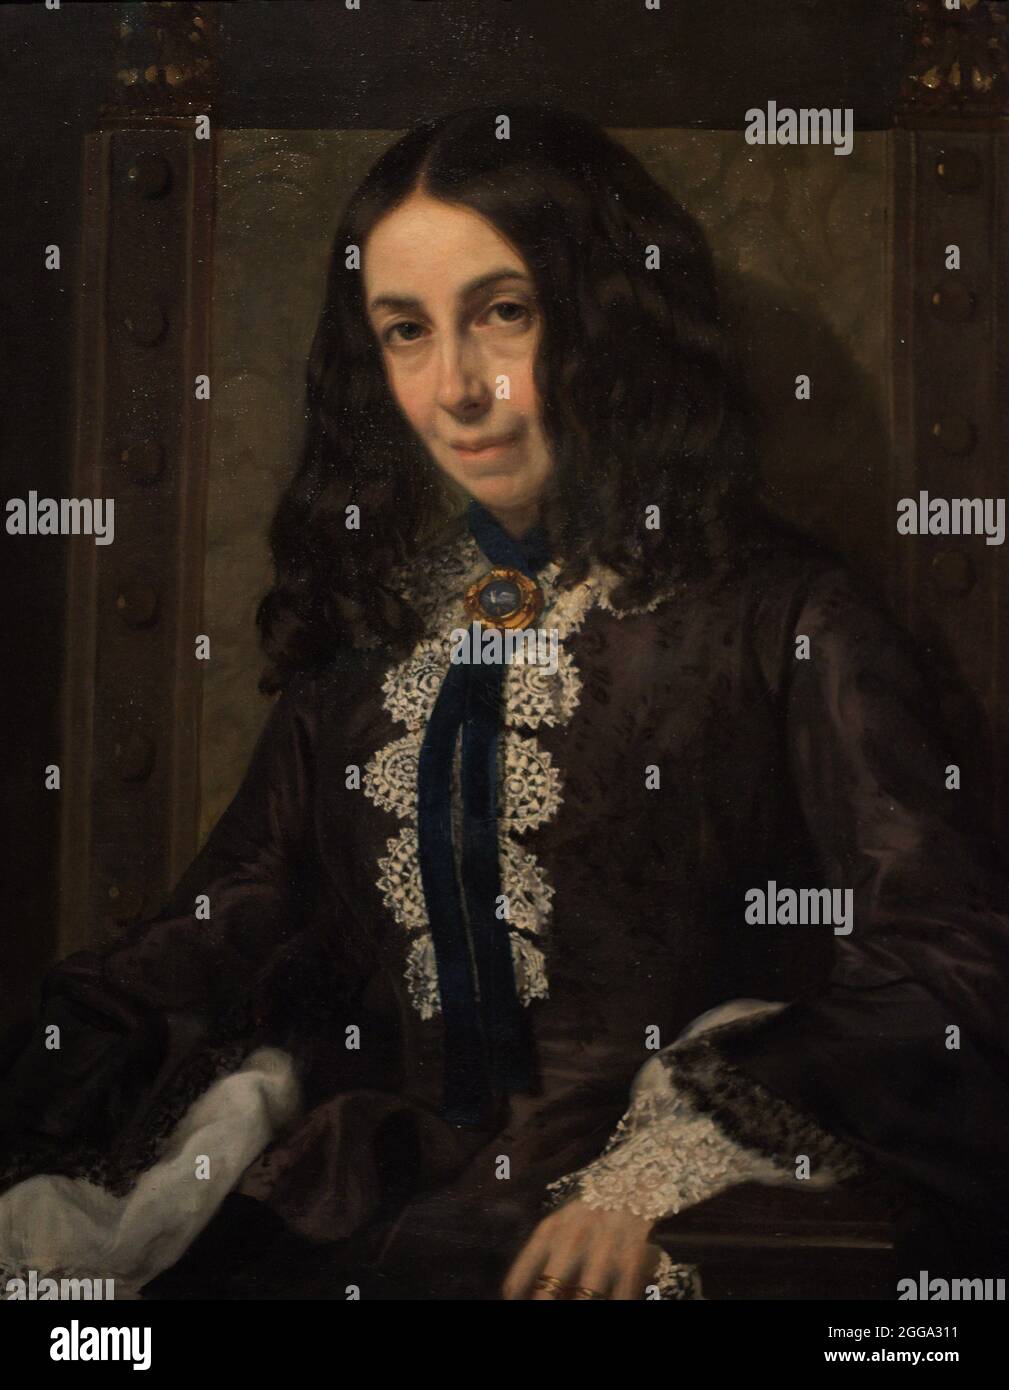 Elizabeth Barrett Browning (1806-1861). Englischer Dichter. Porträt von Michele Gordigiani (1830-1909). Öl auf Leinwand (73,7 x 58,4 cm), 1858. National Portrait Gallery. London, England, Vereinigtes Königreich. Stockfoto